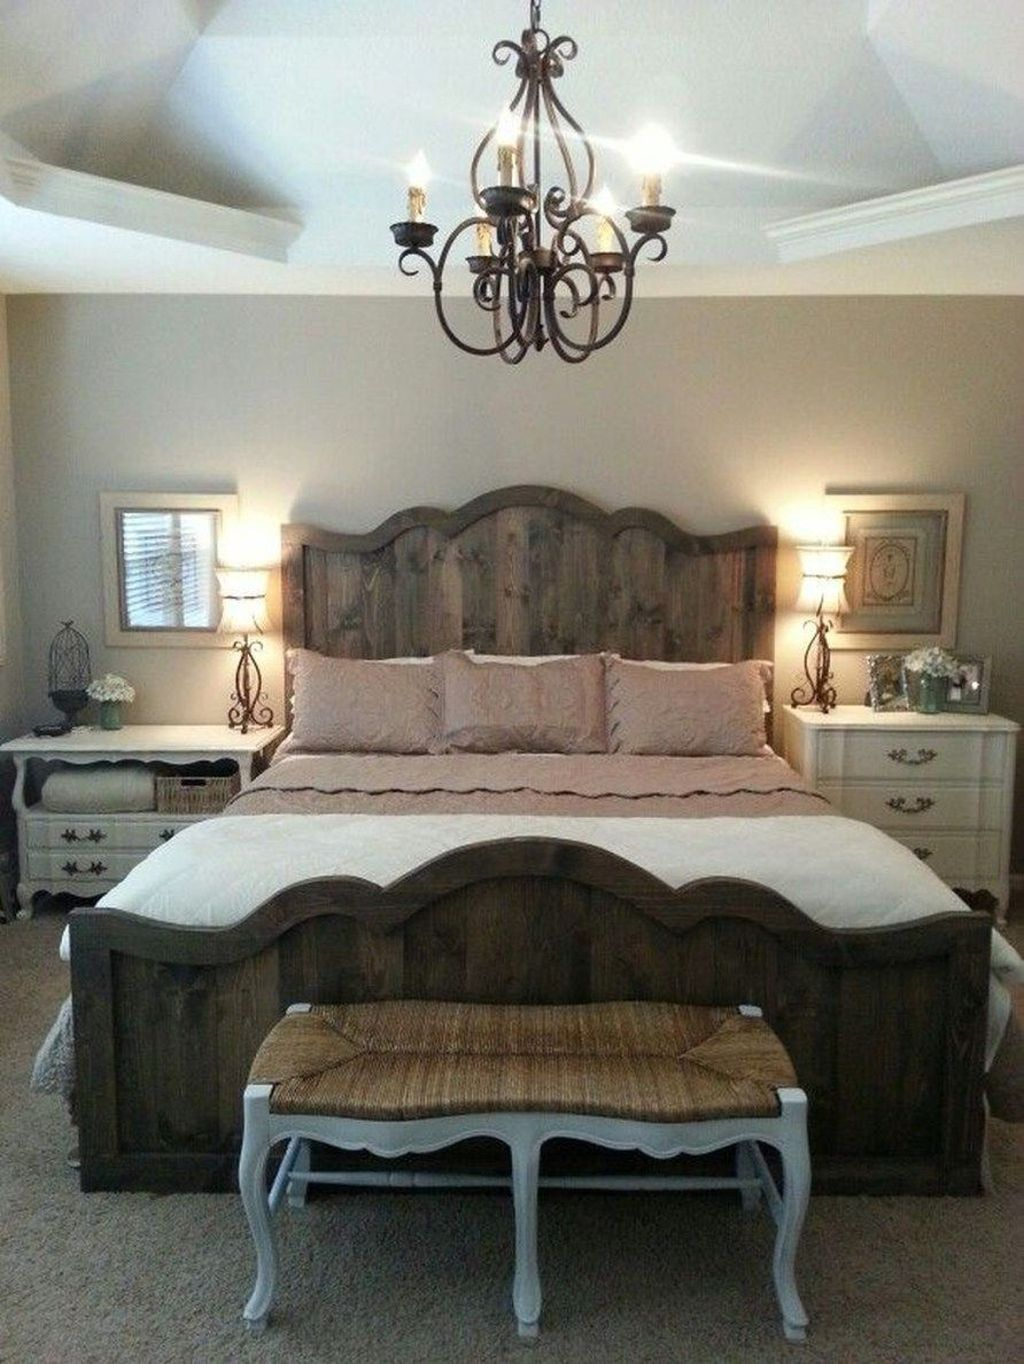 Modern Bedroom For Farmhouse Design37